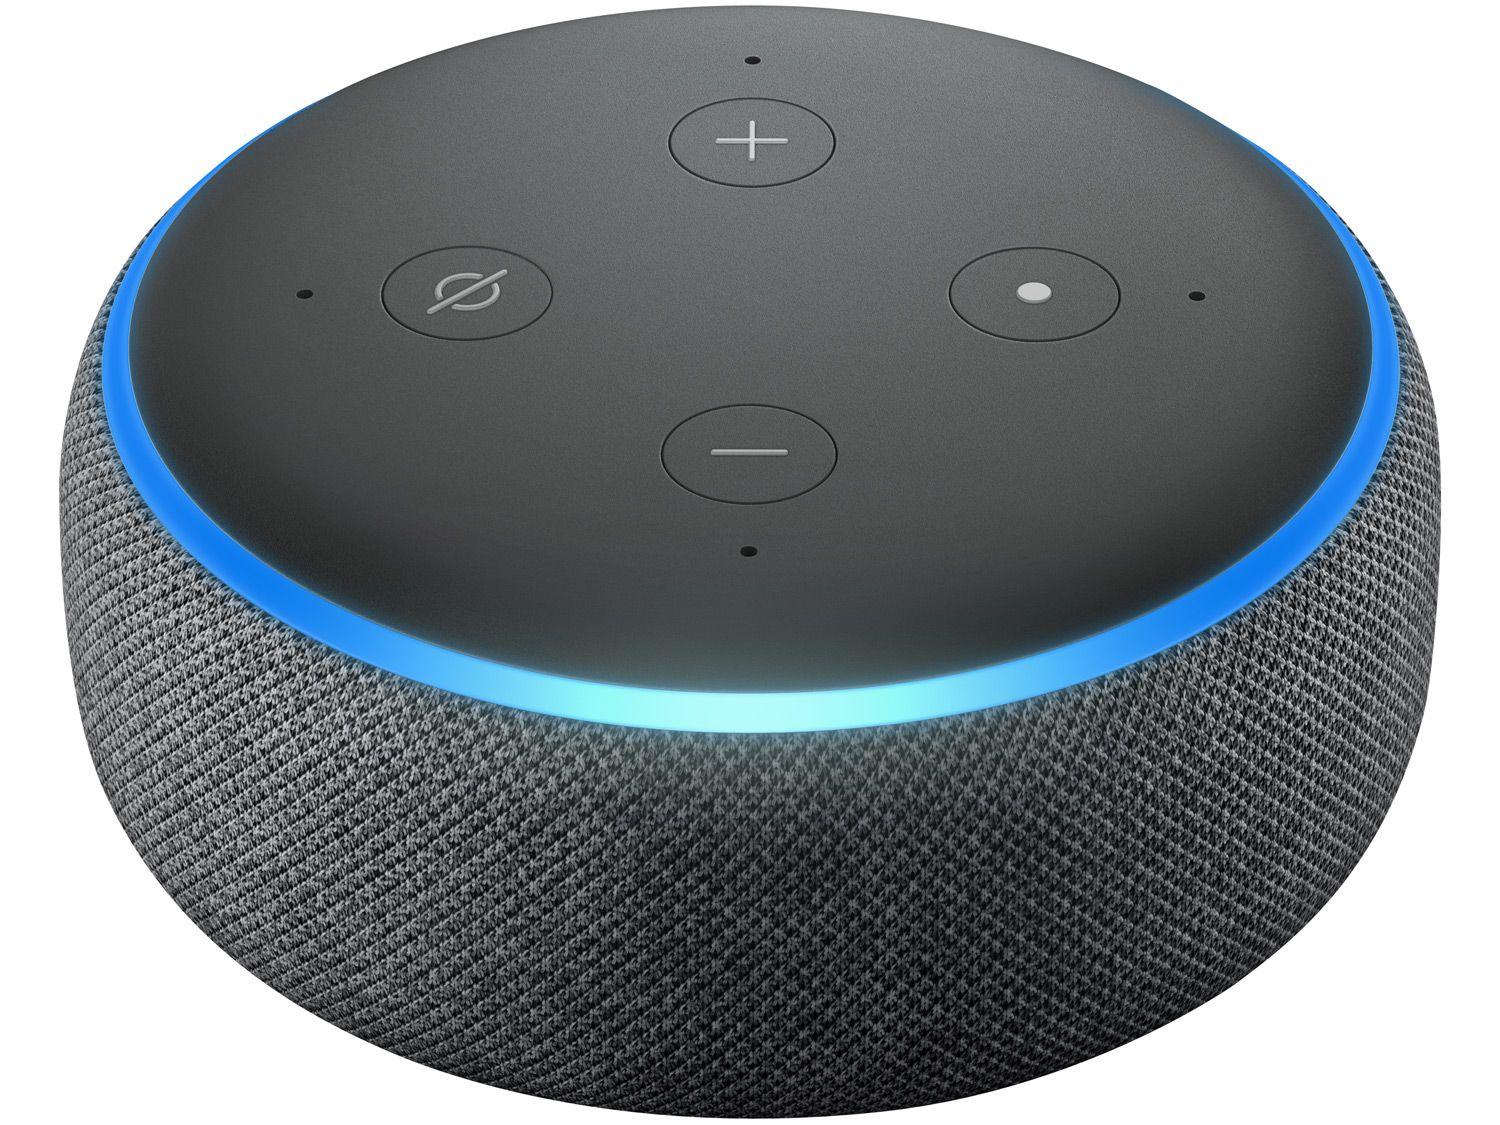 Echo Dot (3ª Geração) com Alexa, Amazon Smart Speaker Preto